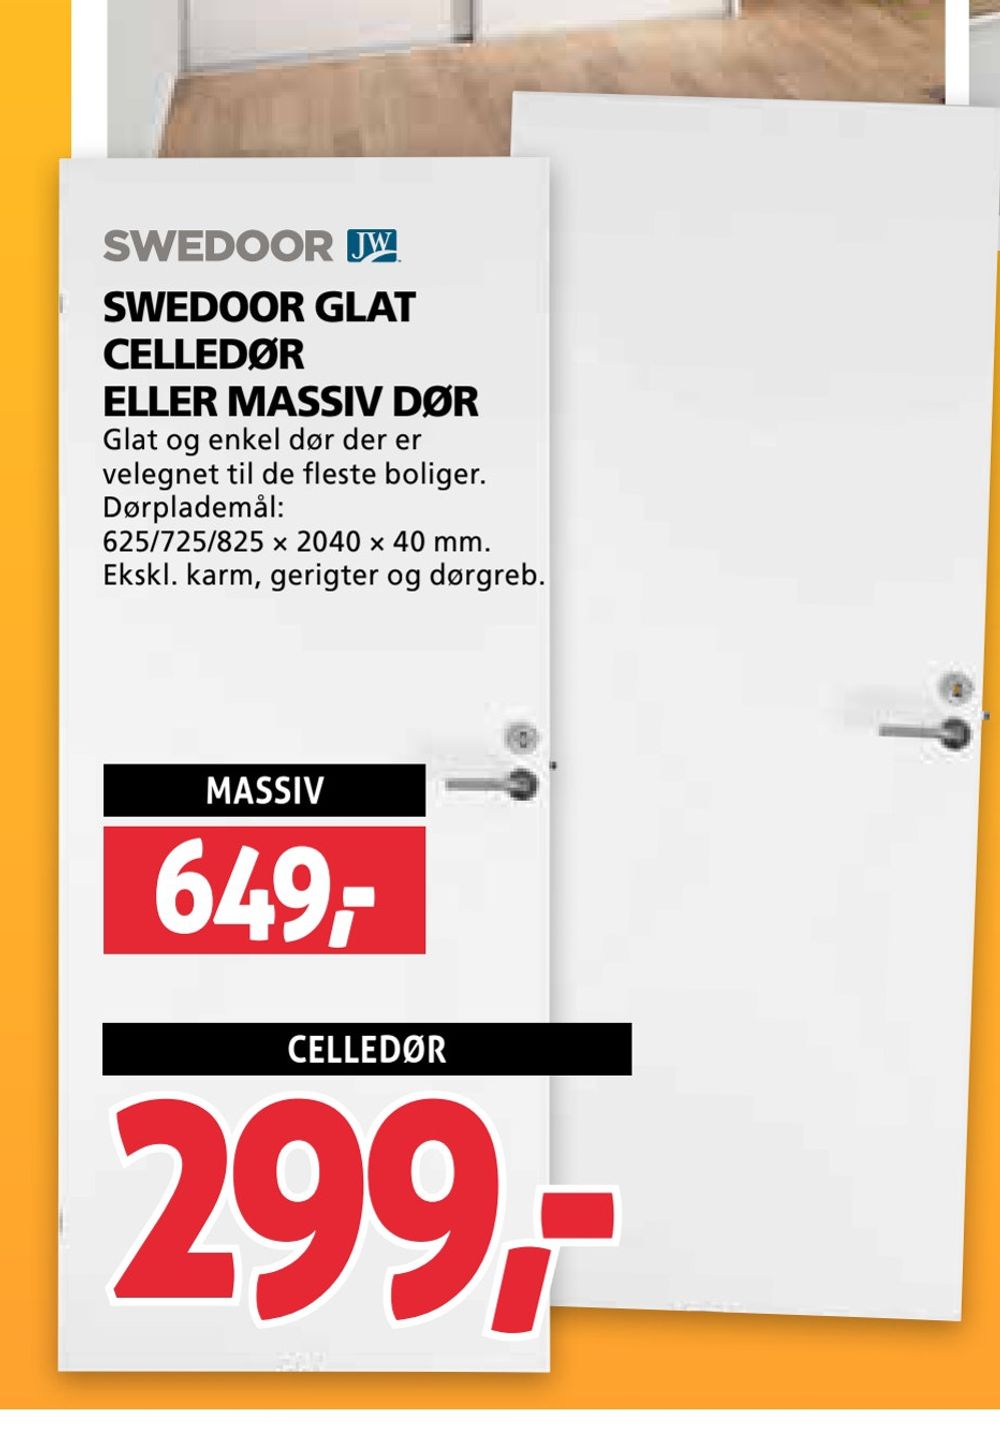 Swedoor glat eller massiv dør til Xl-byg | Allematerialer.dk